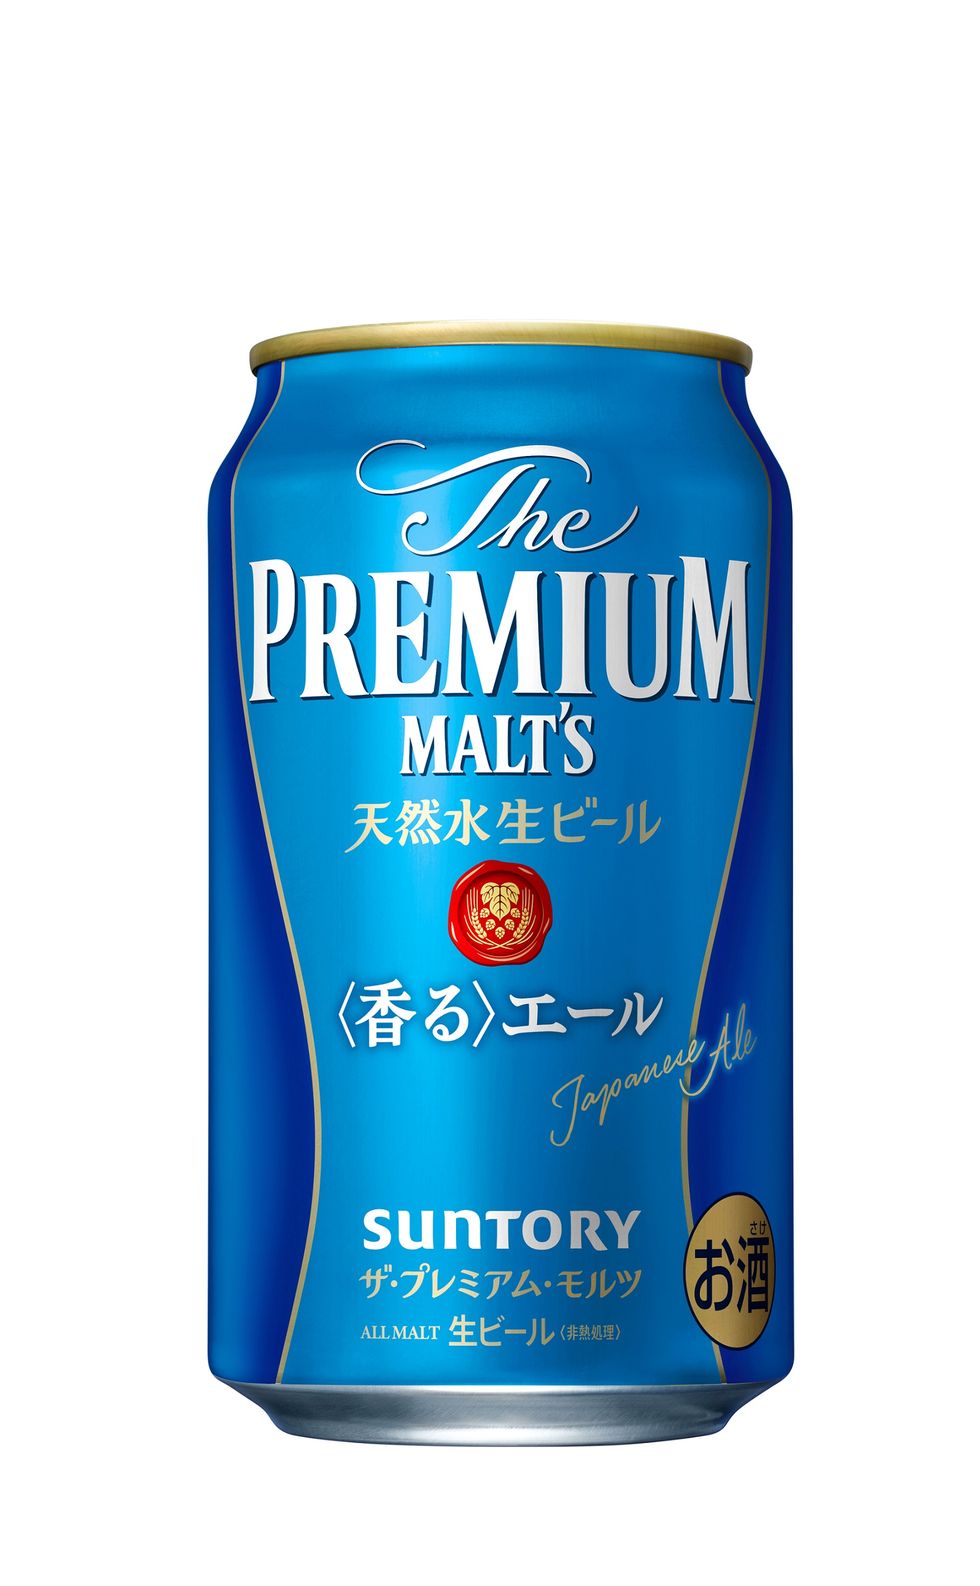 三得利頂級啤酒 the premium malt’s